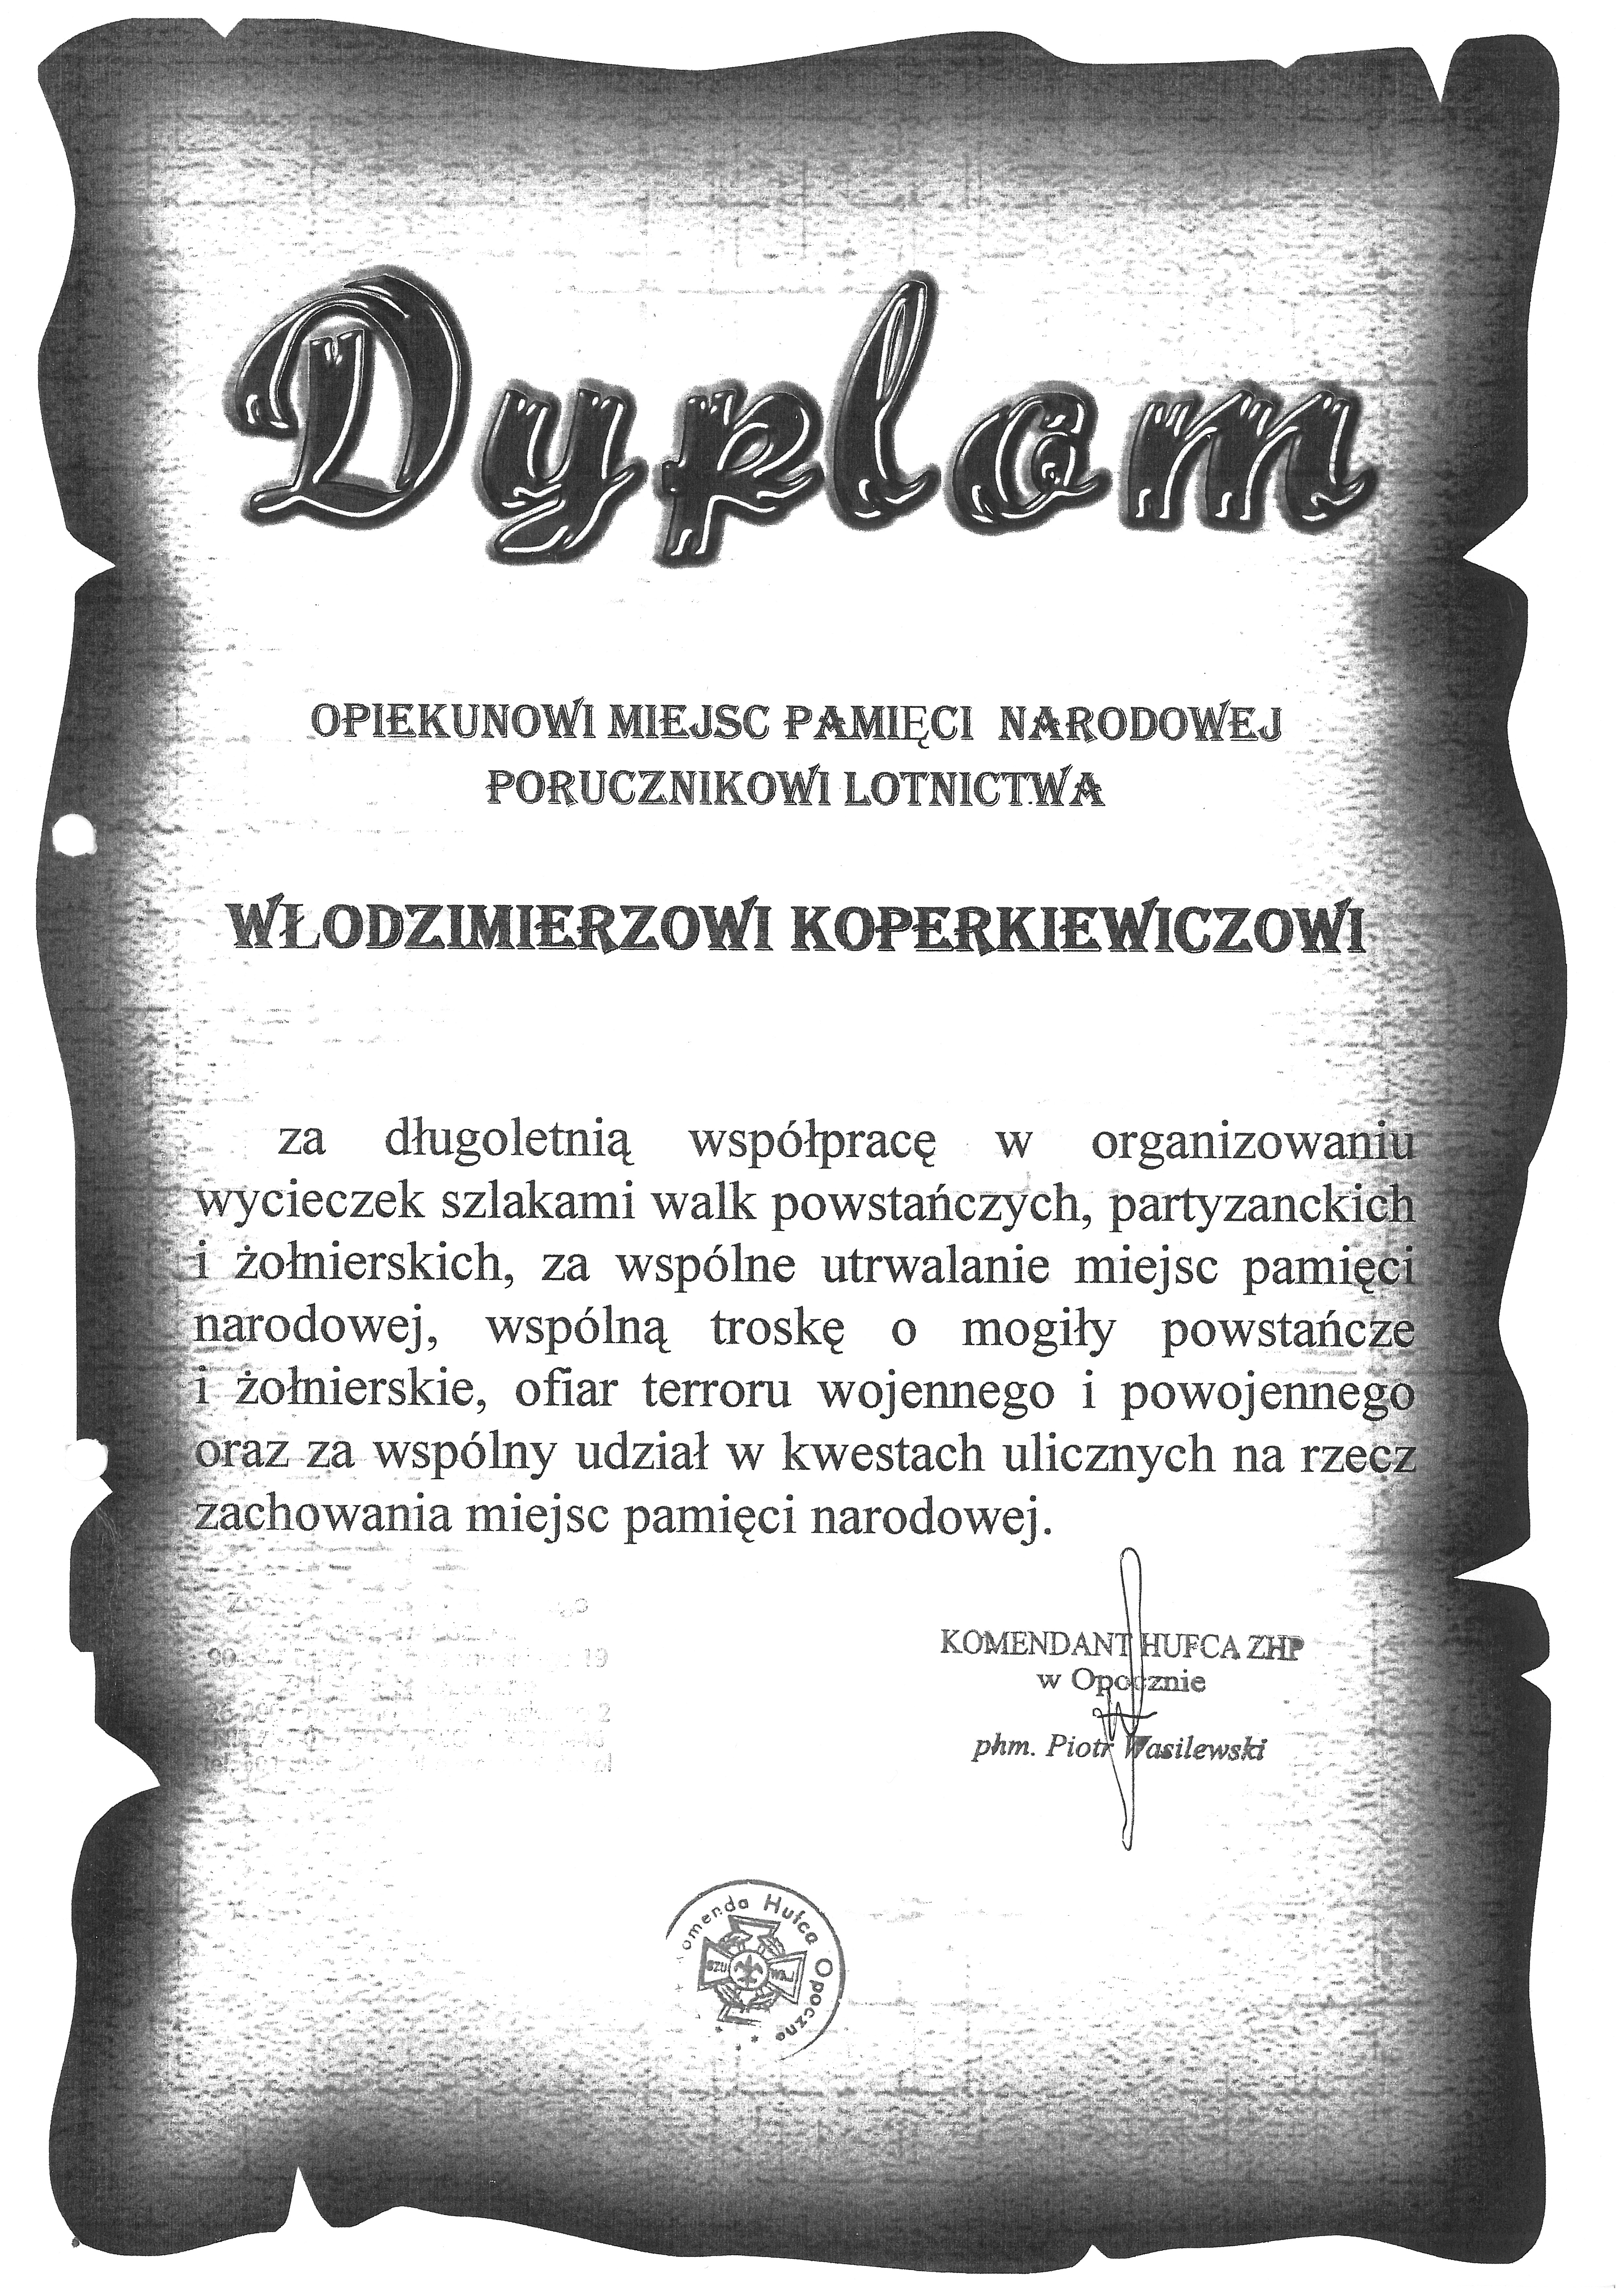 Dyplom uznania za działalność społeczną dla Włodzimierza Koperkiewicza.